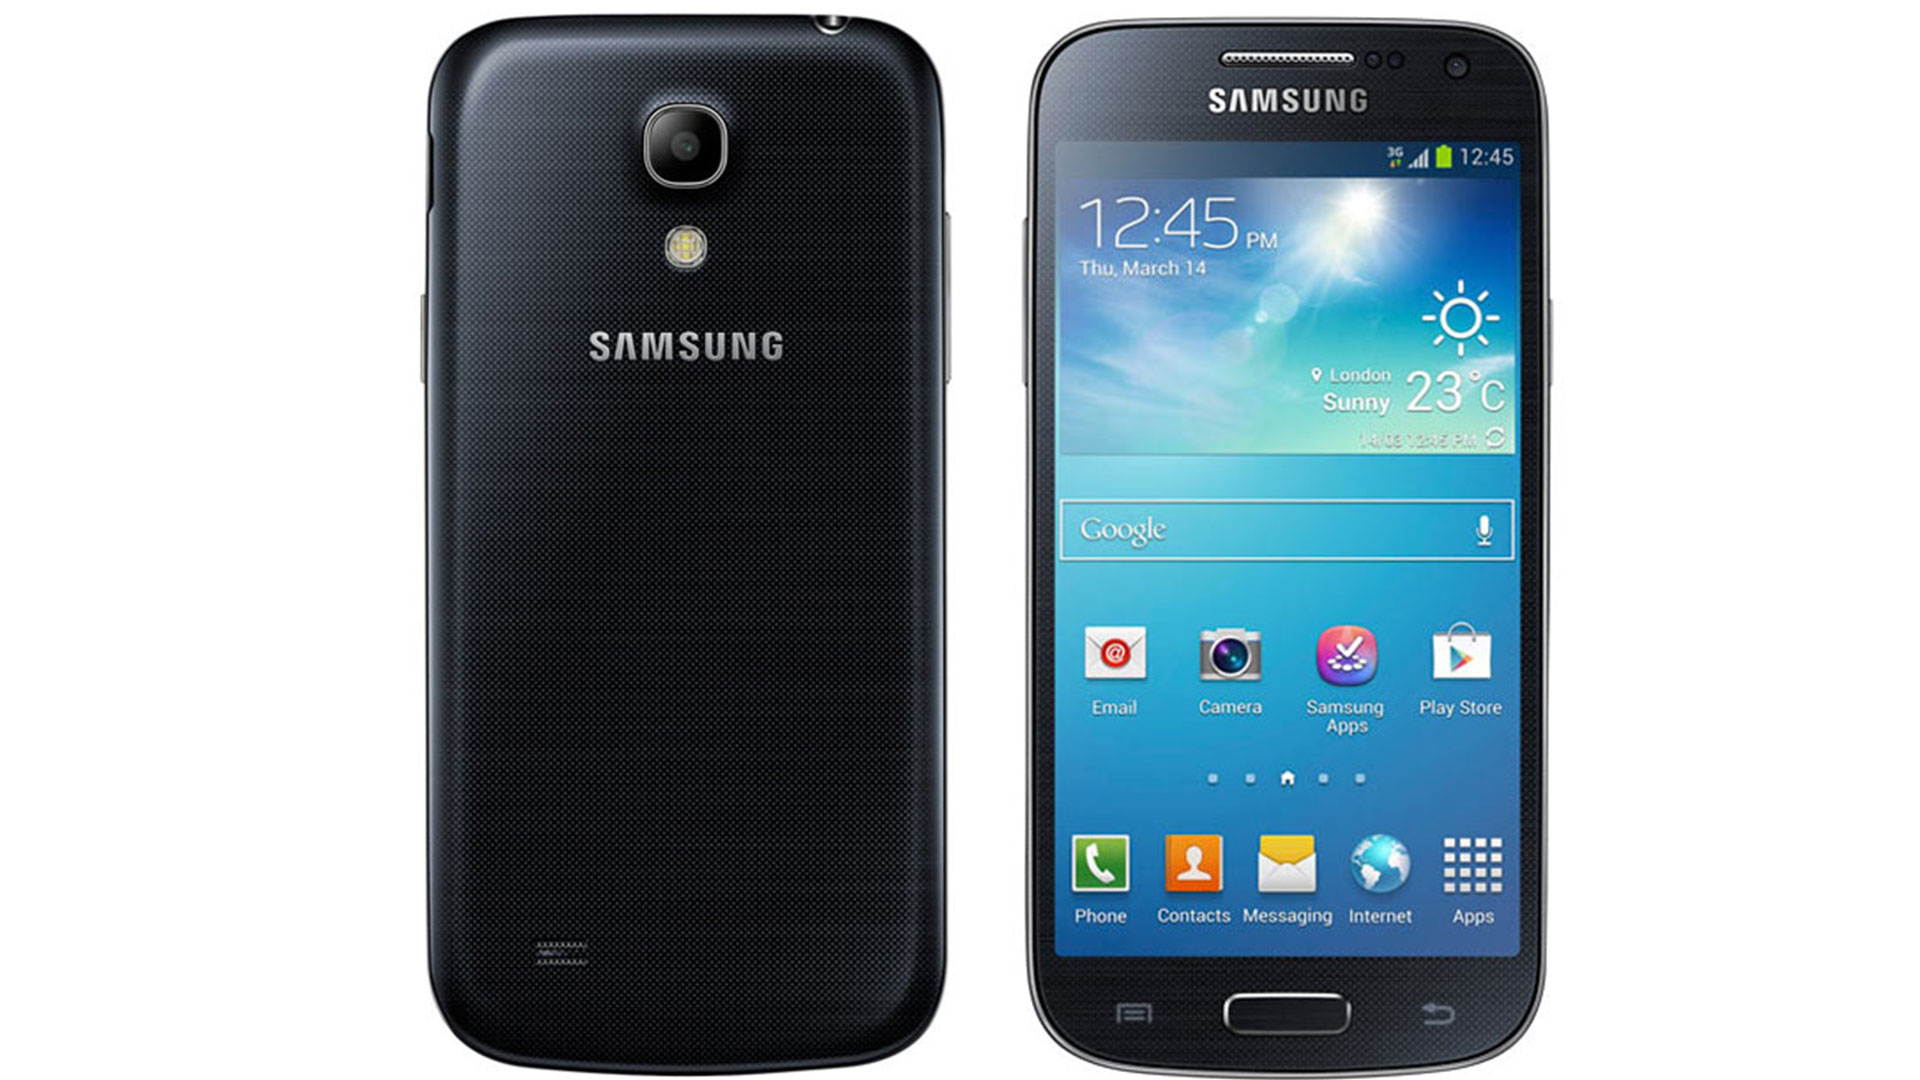 نگاهی به مشخصات فنی گوشی Galaxy S4 mini سامسونگ